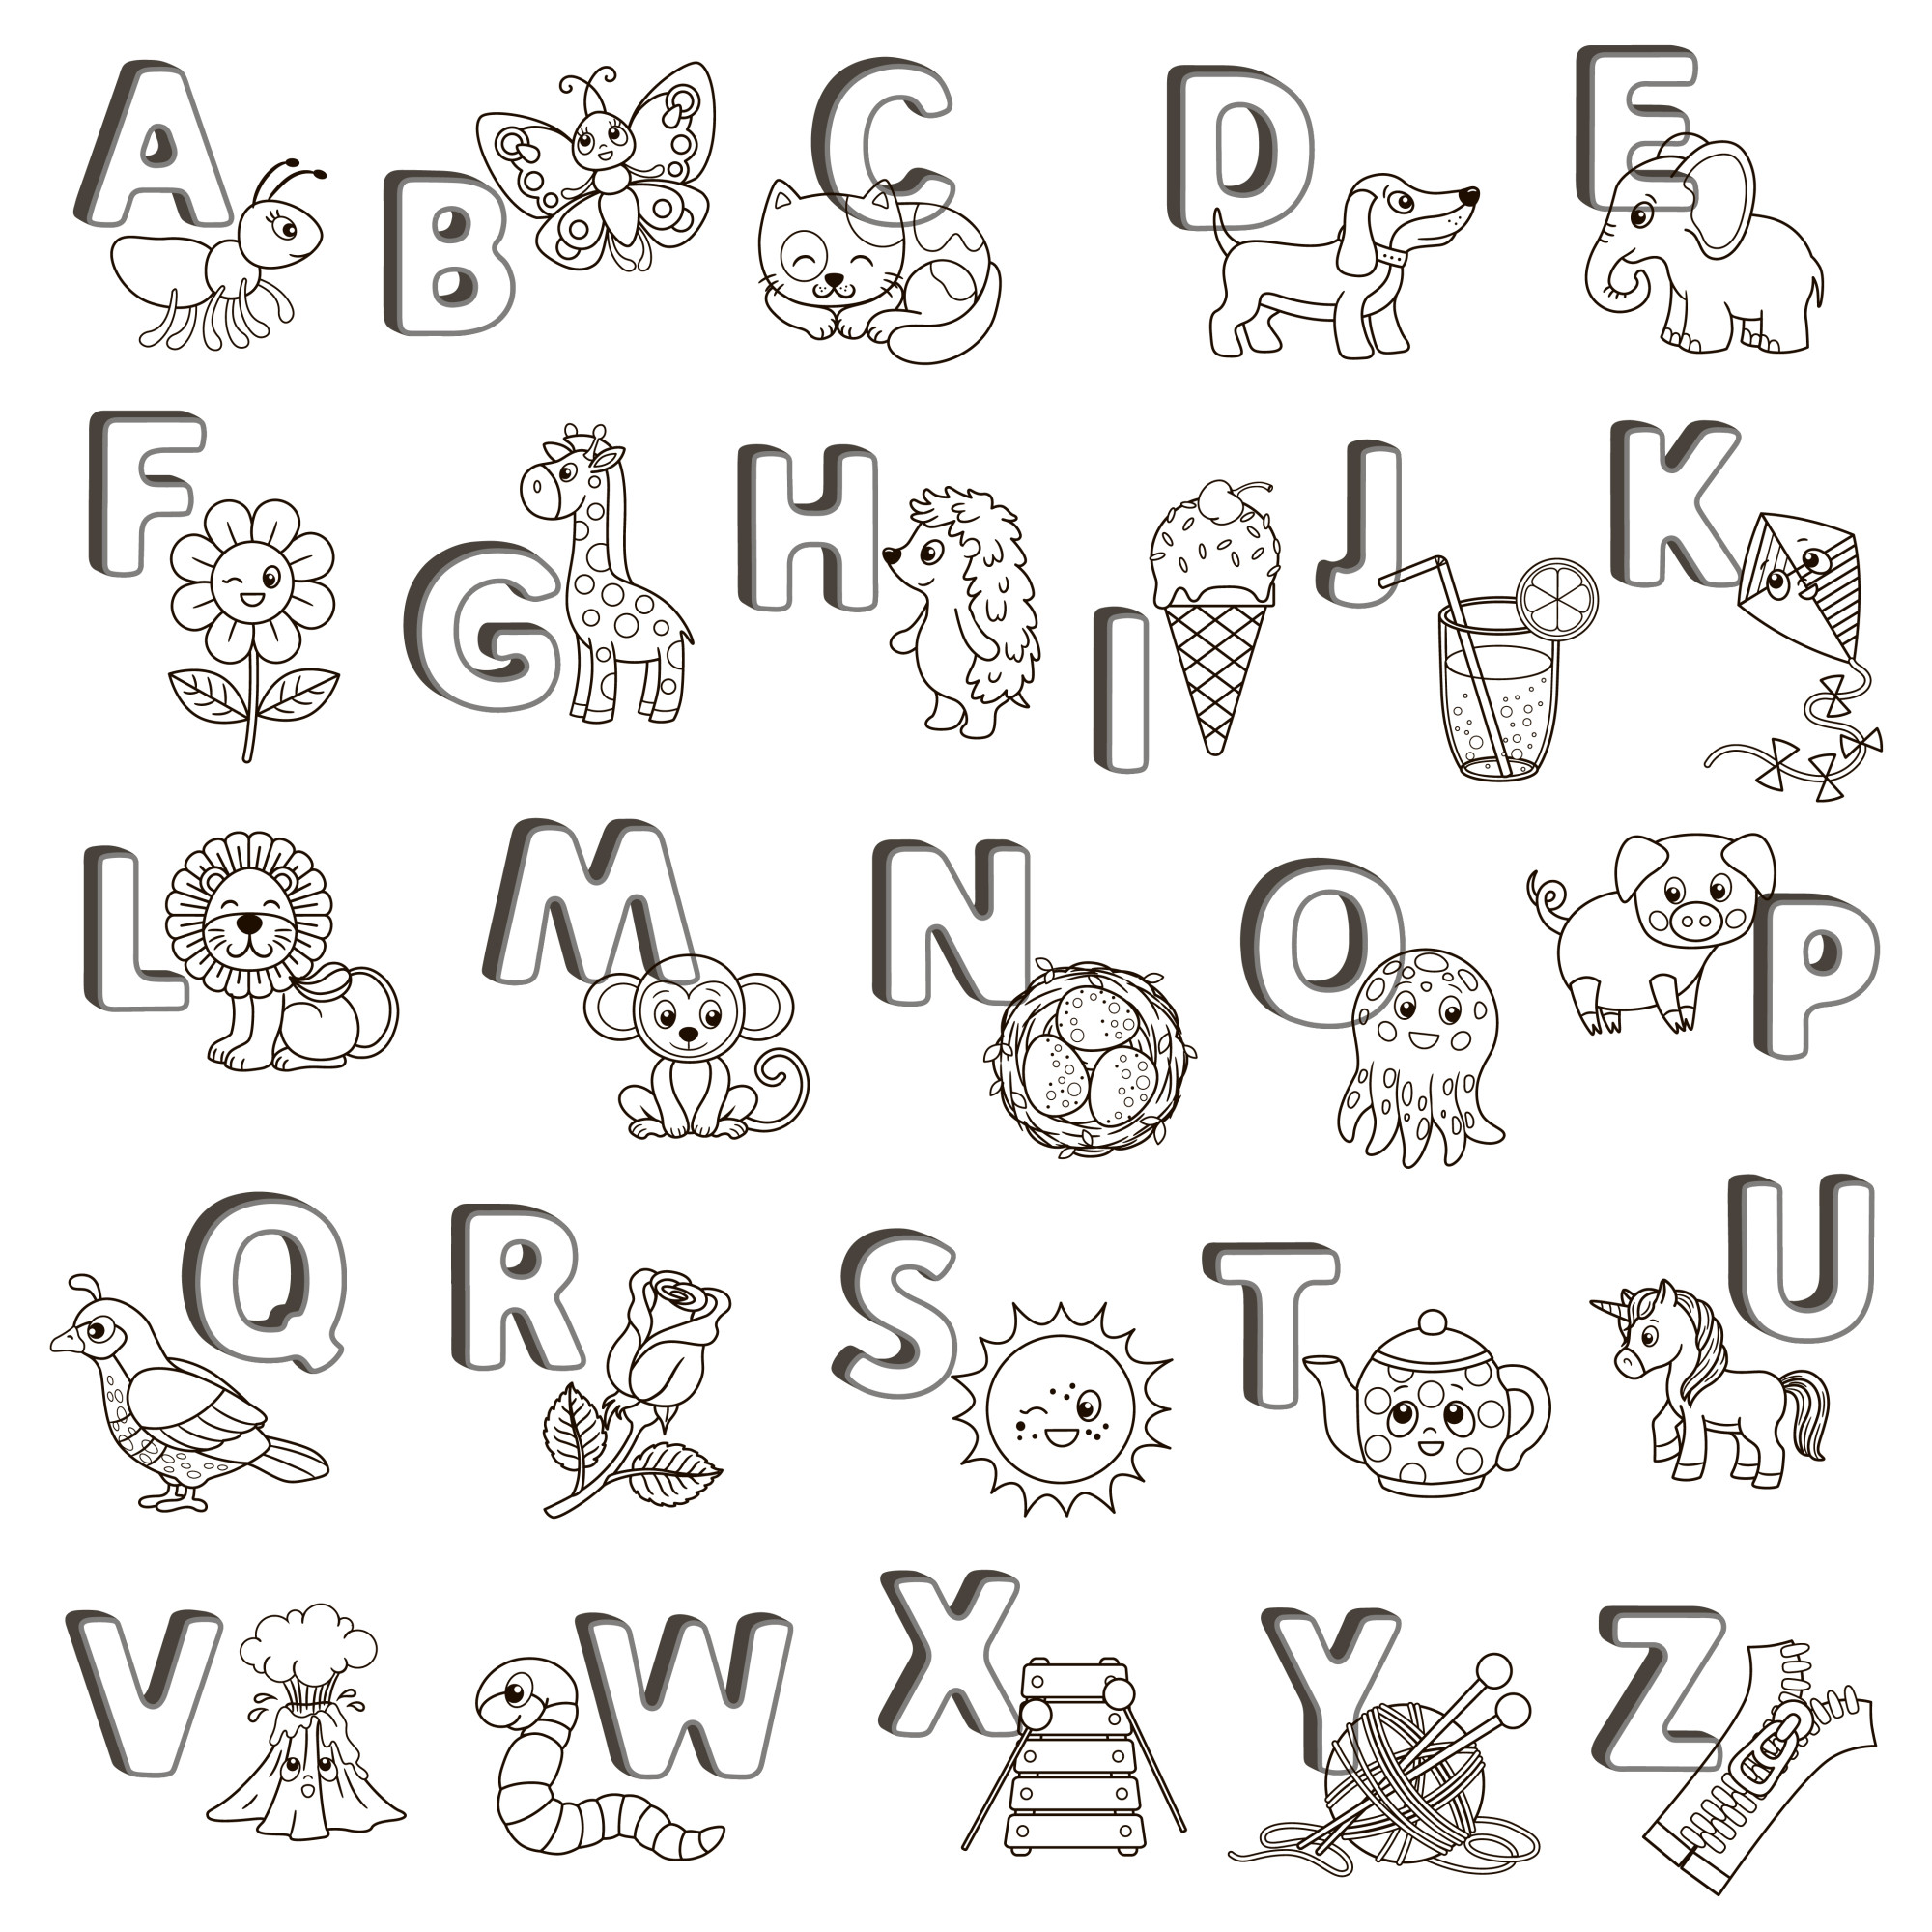 Раскраска для детей: английский алфавит с животными